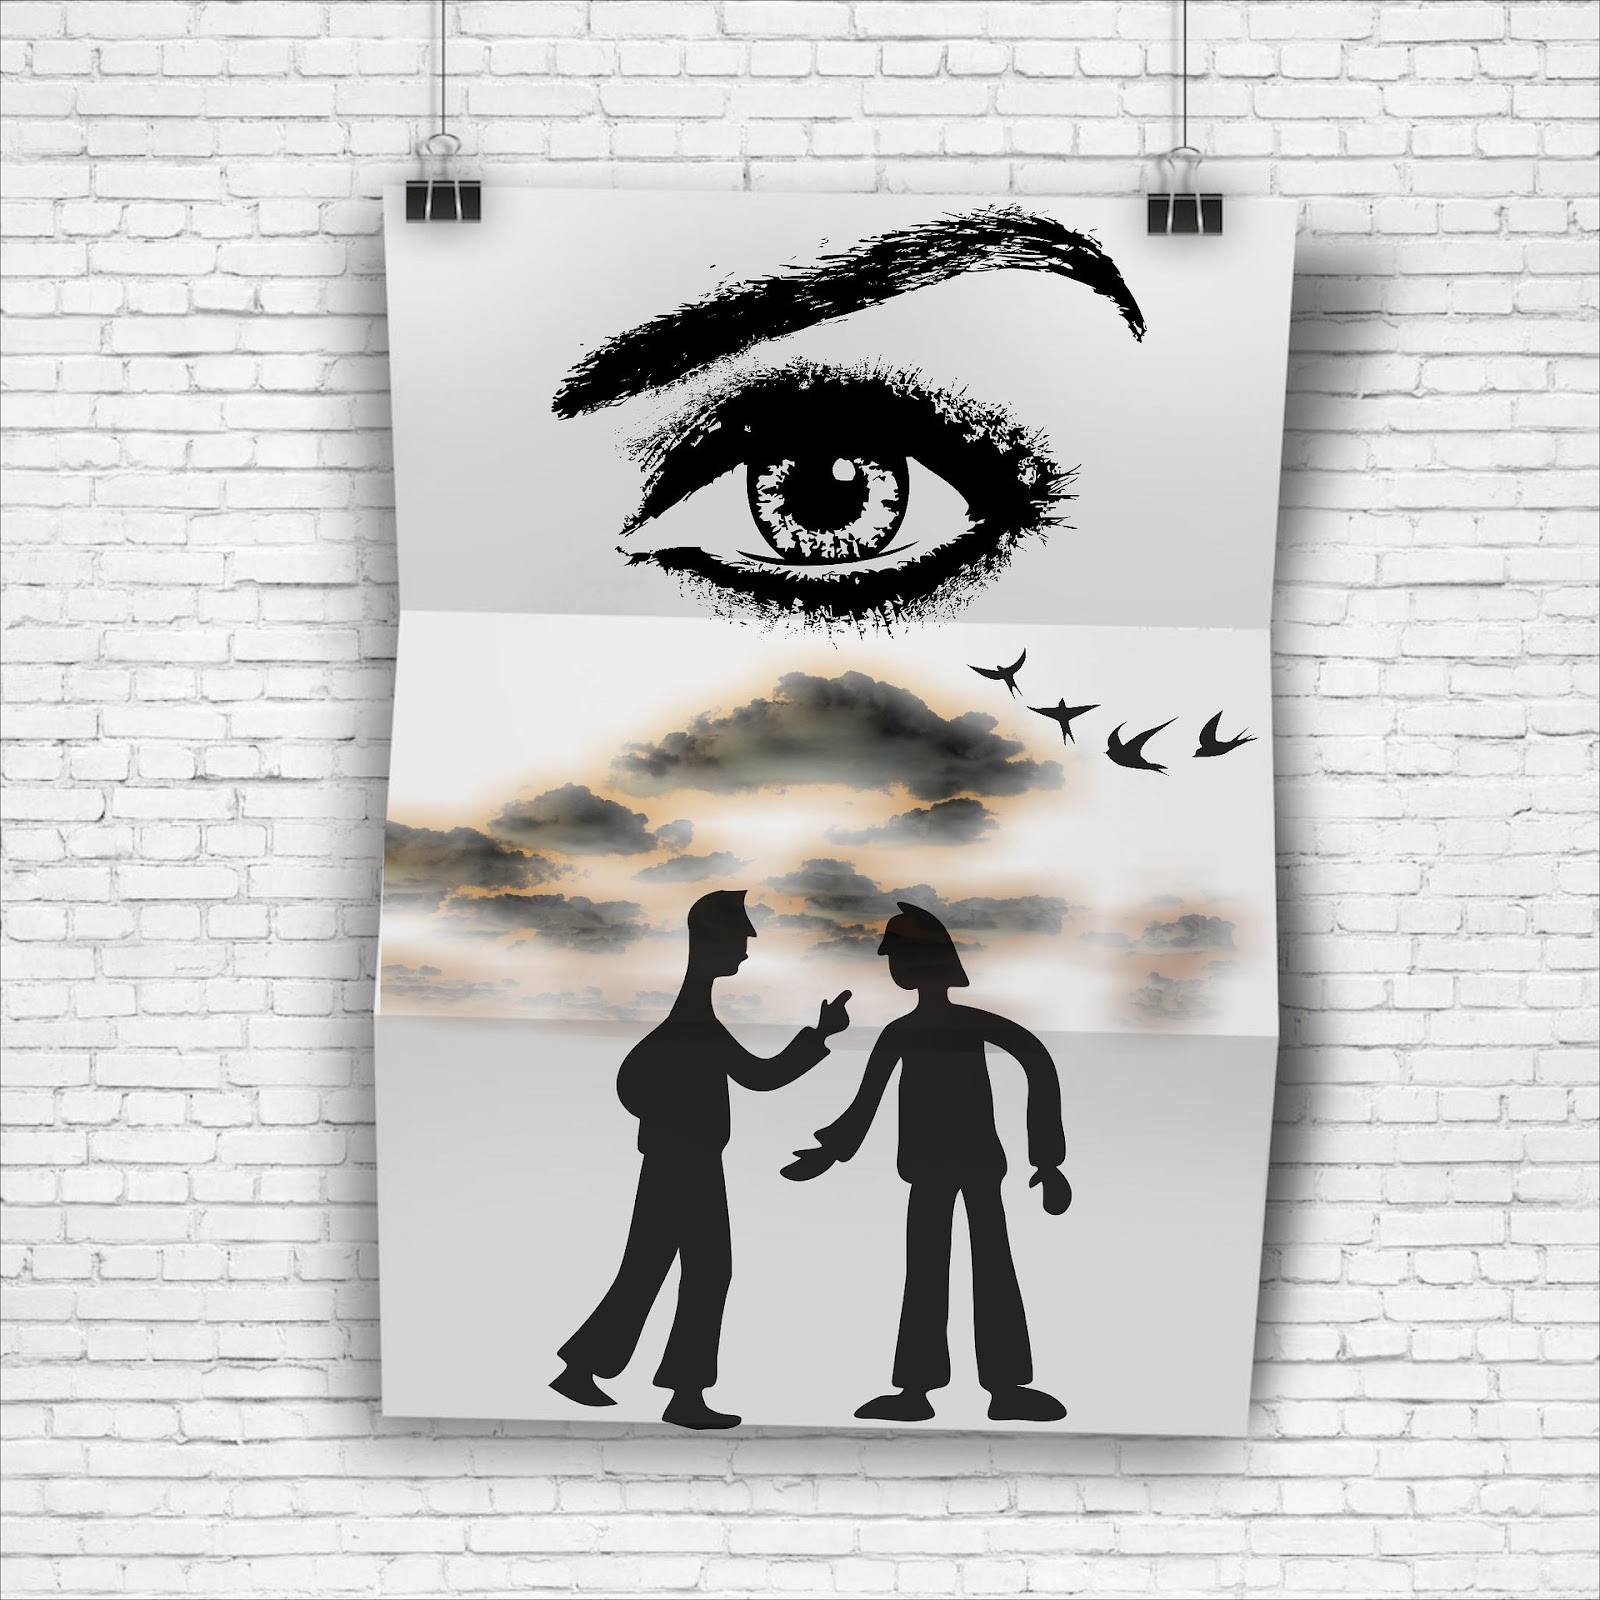 Un ojo grande con ceja arqueada dibujado sobre una escena de dos personas gesticulando, presumiblemente discutiendo.